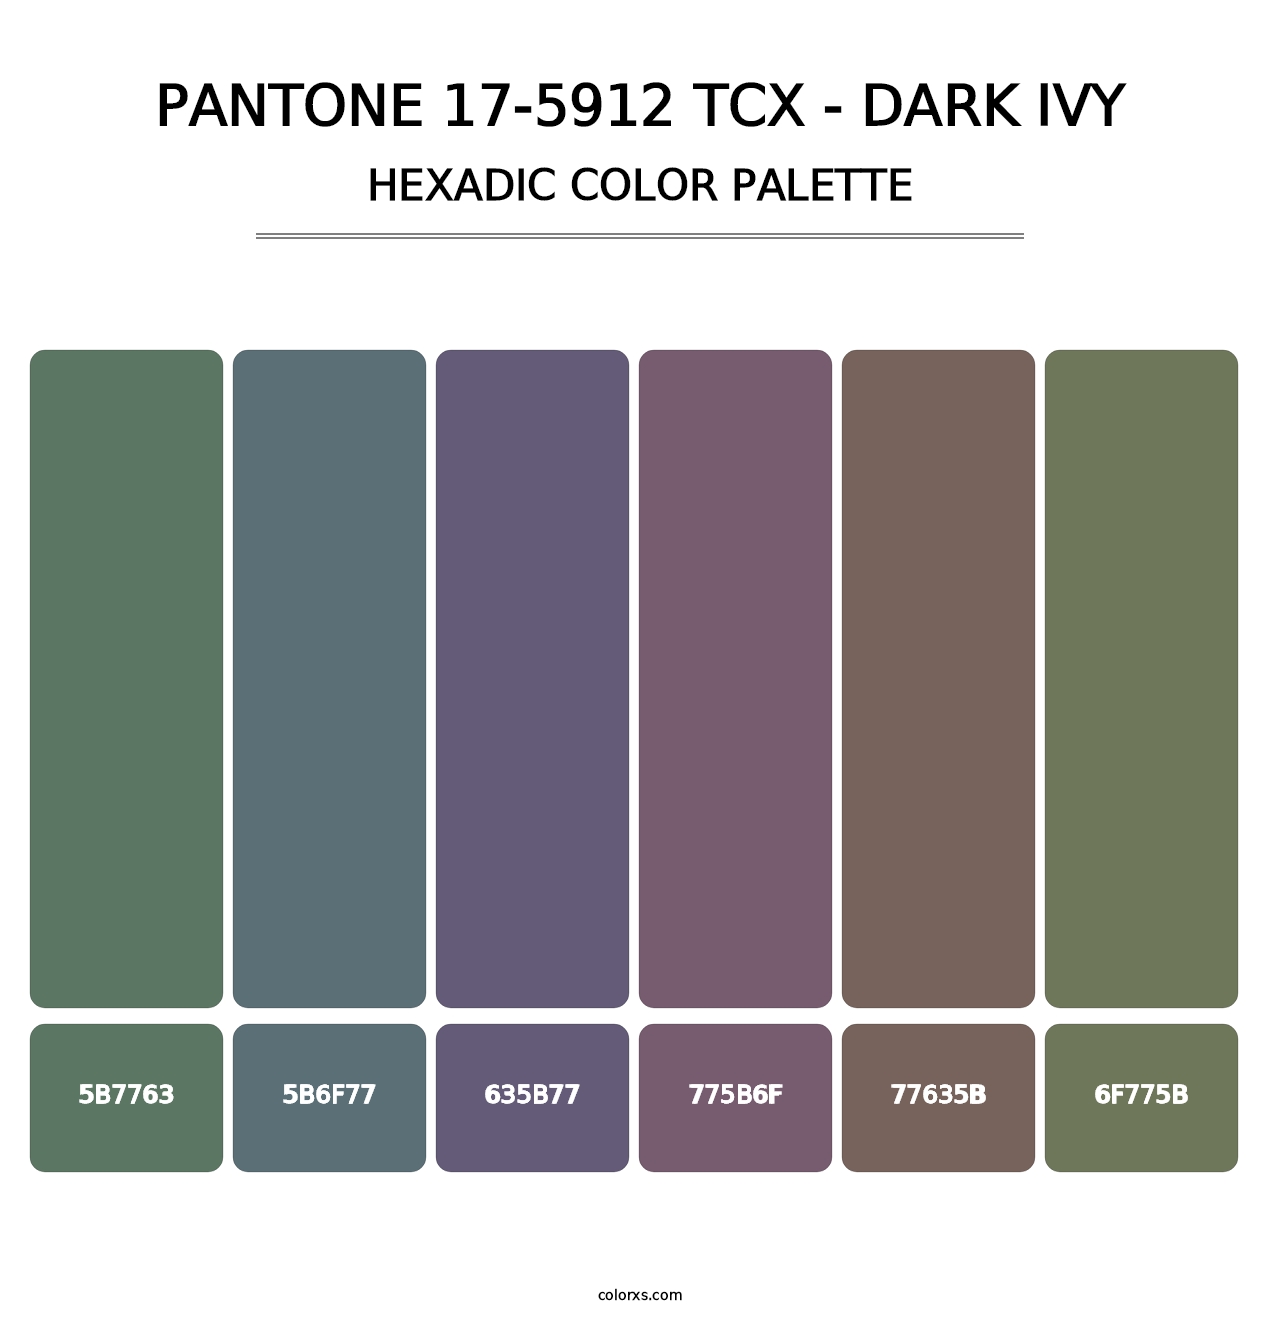 PANTONE 17-5912 TCX - Dark Ivy - Hexadic Color Palette